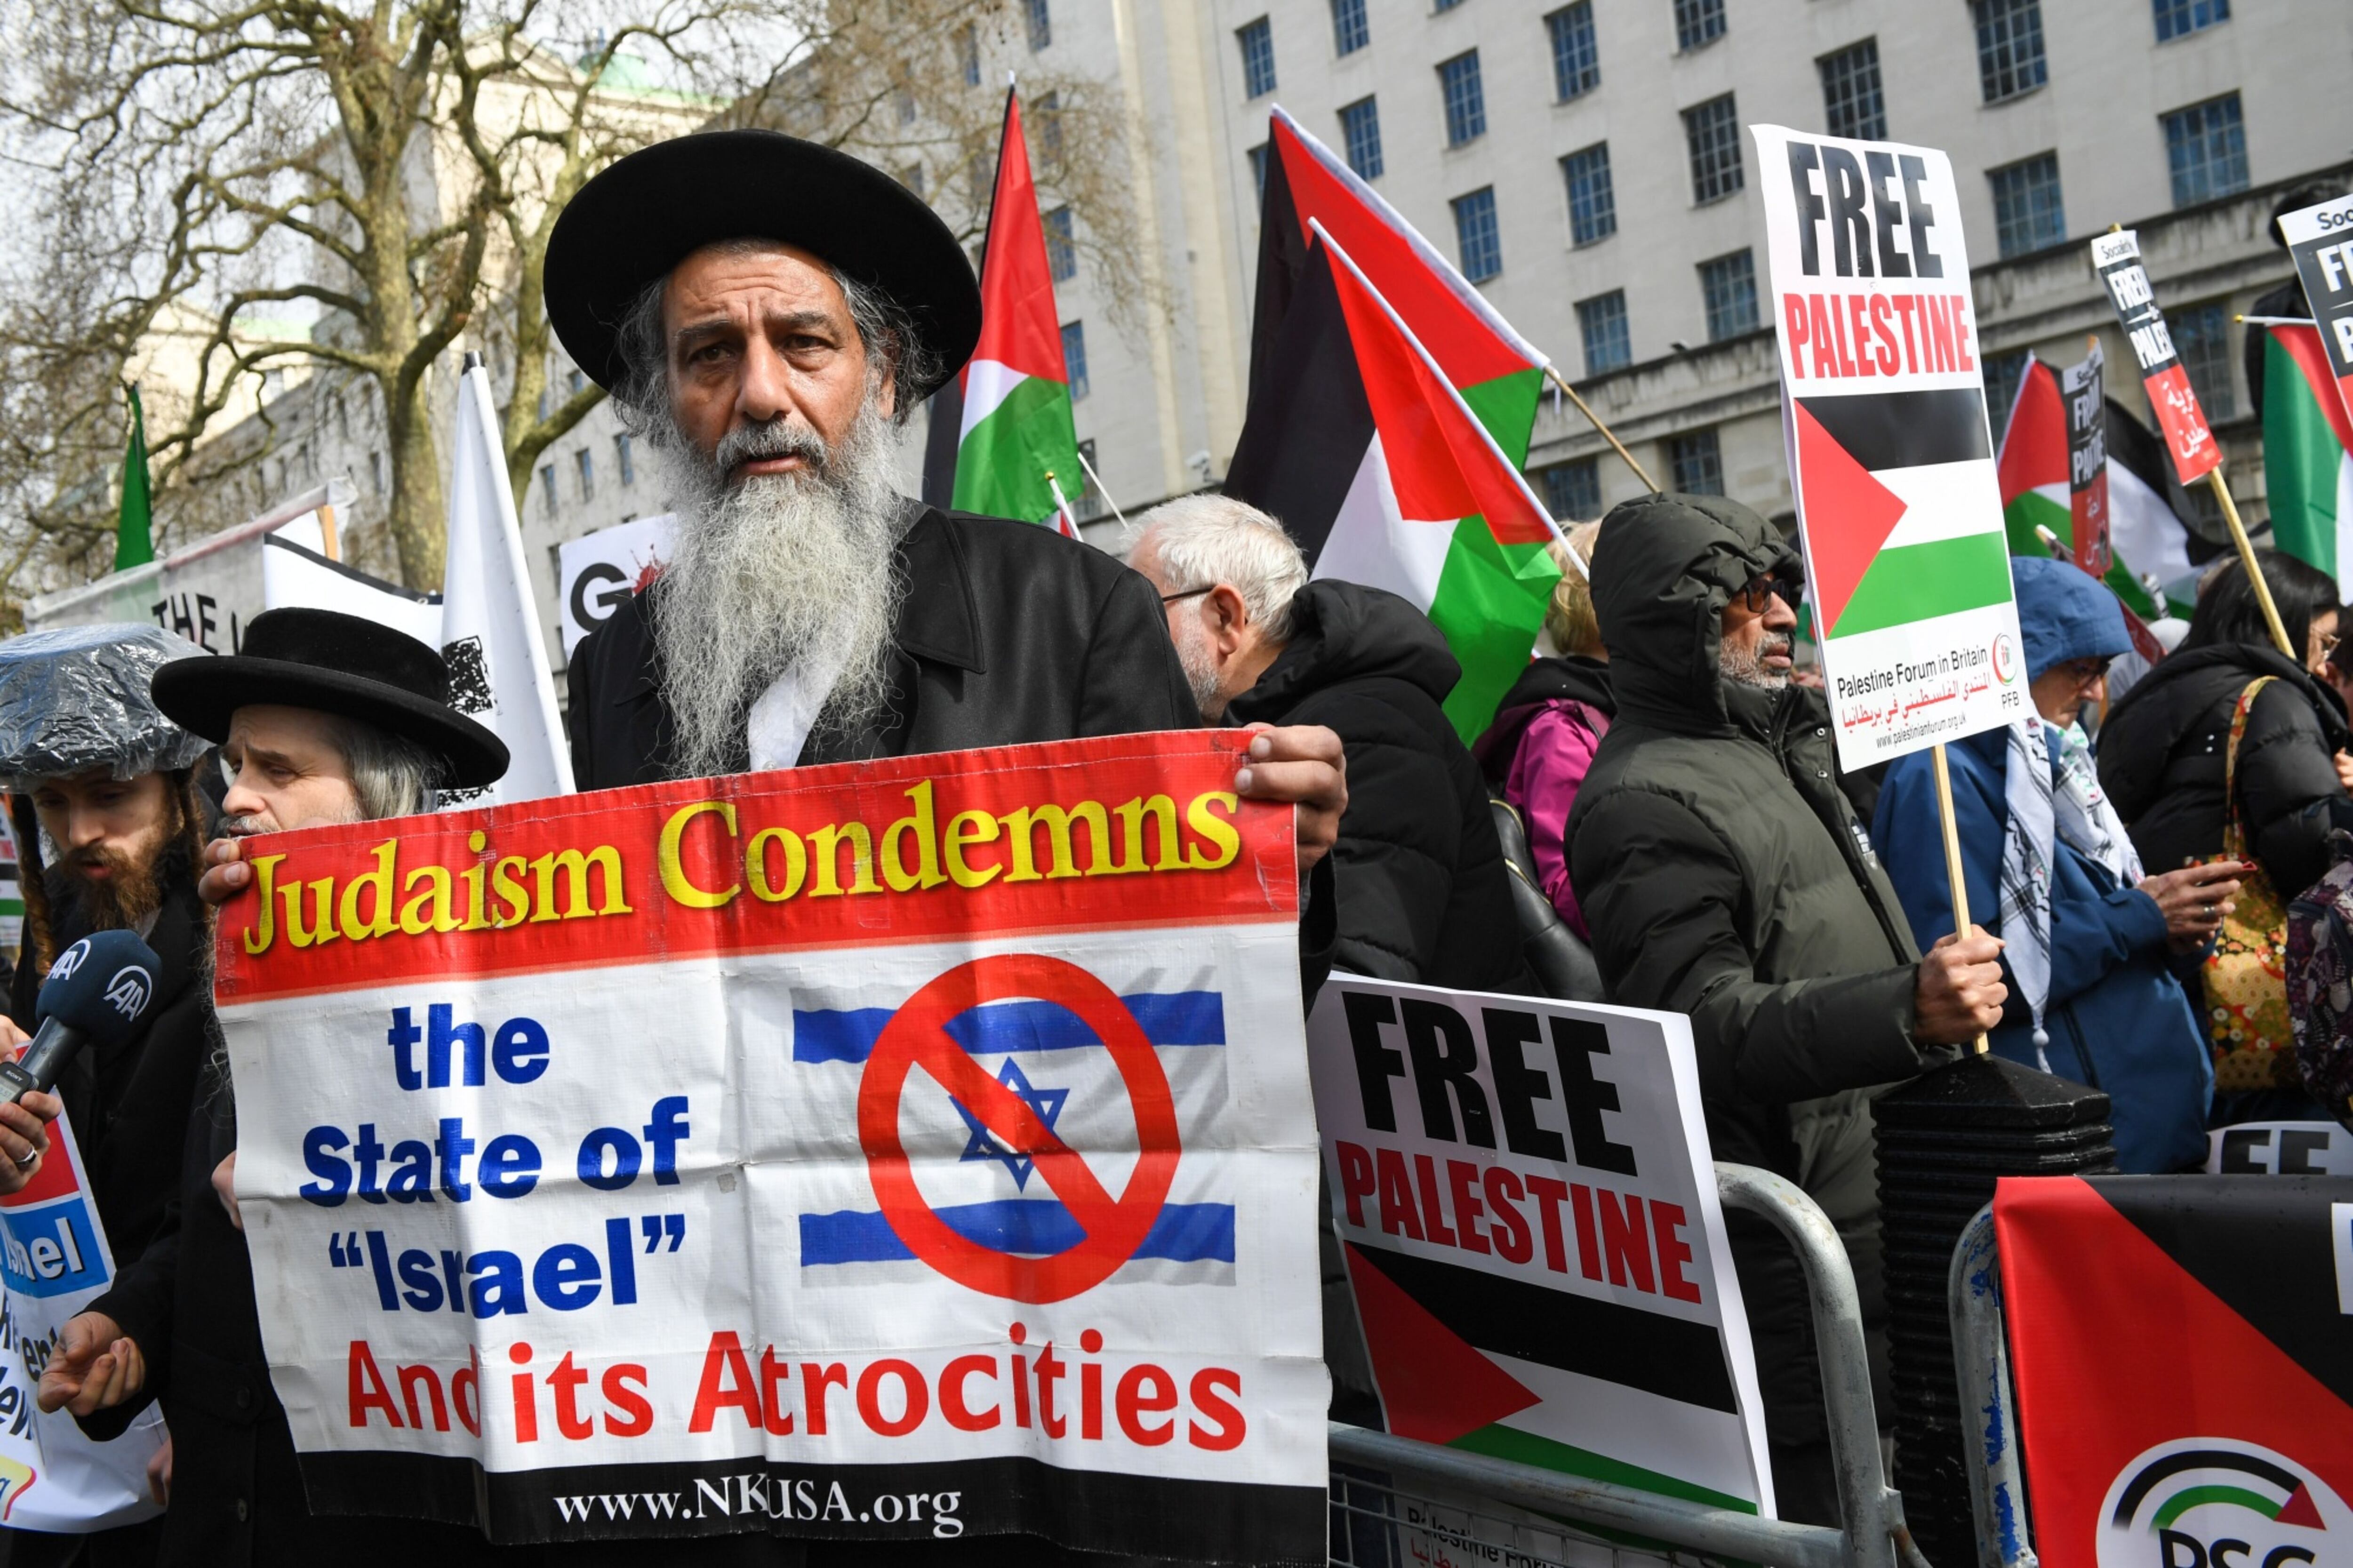 Un judío ortodoxo sostiene una pancarta que dice 'El judaísmo condena el Estado de Israel y sus atrocidades' mientras los manifestantes ondean banderas palestinas durante una manifestación.